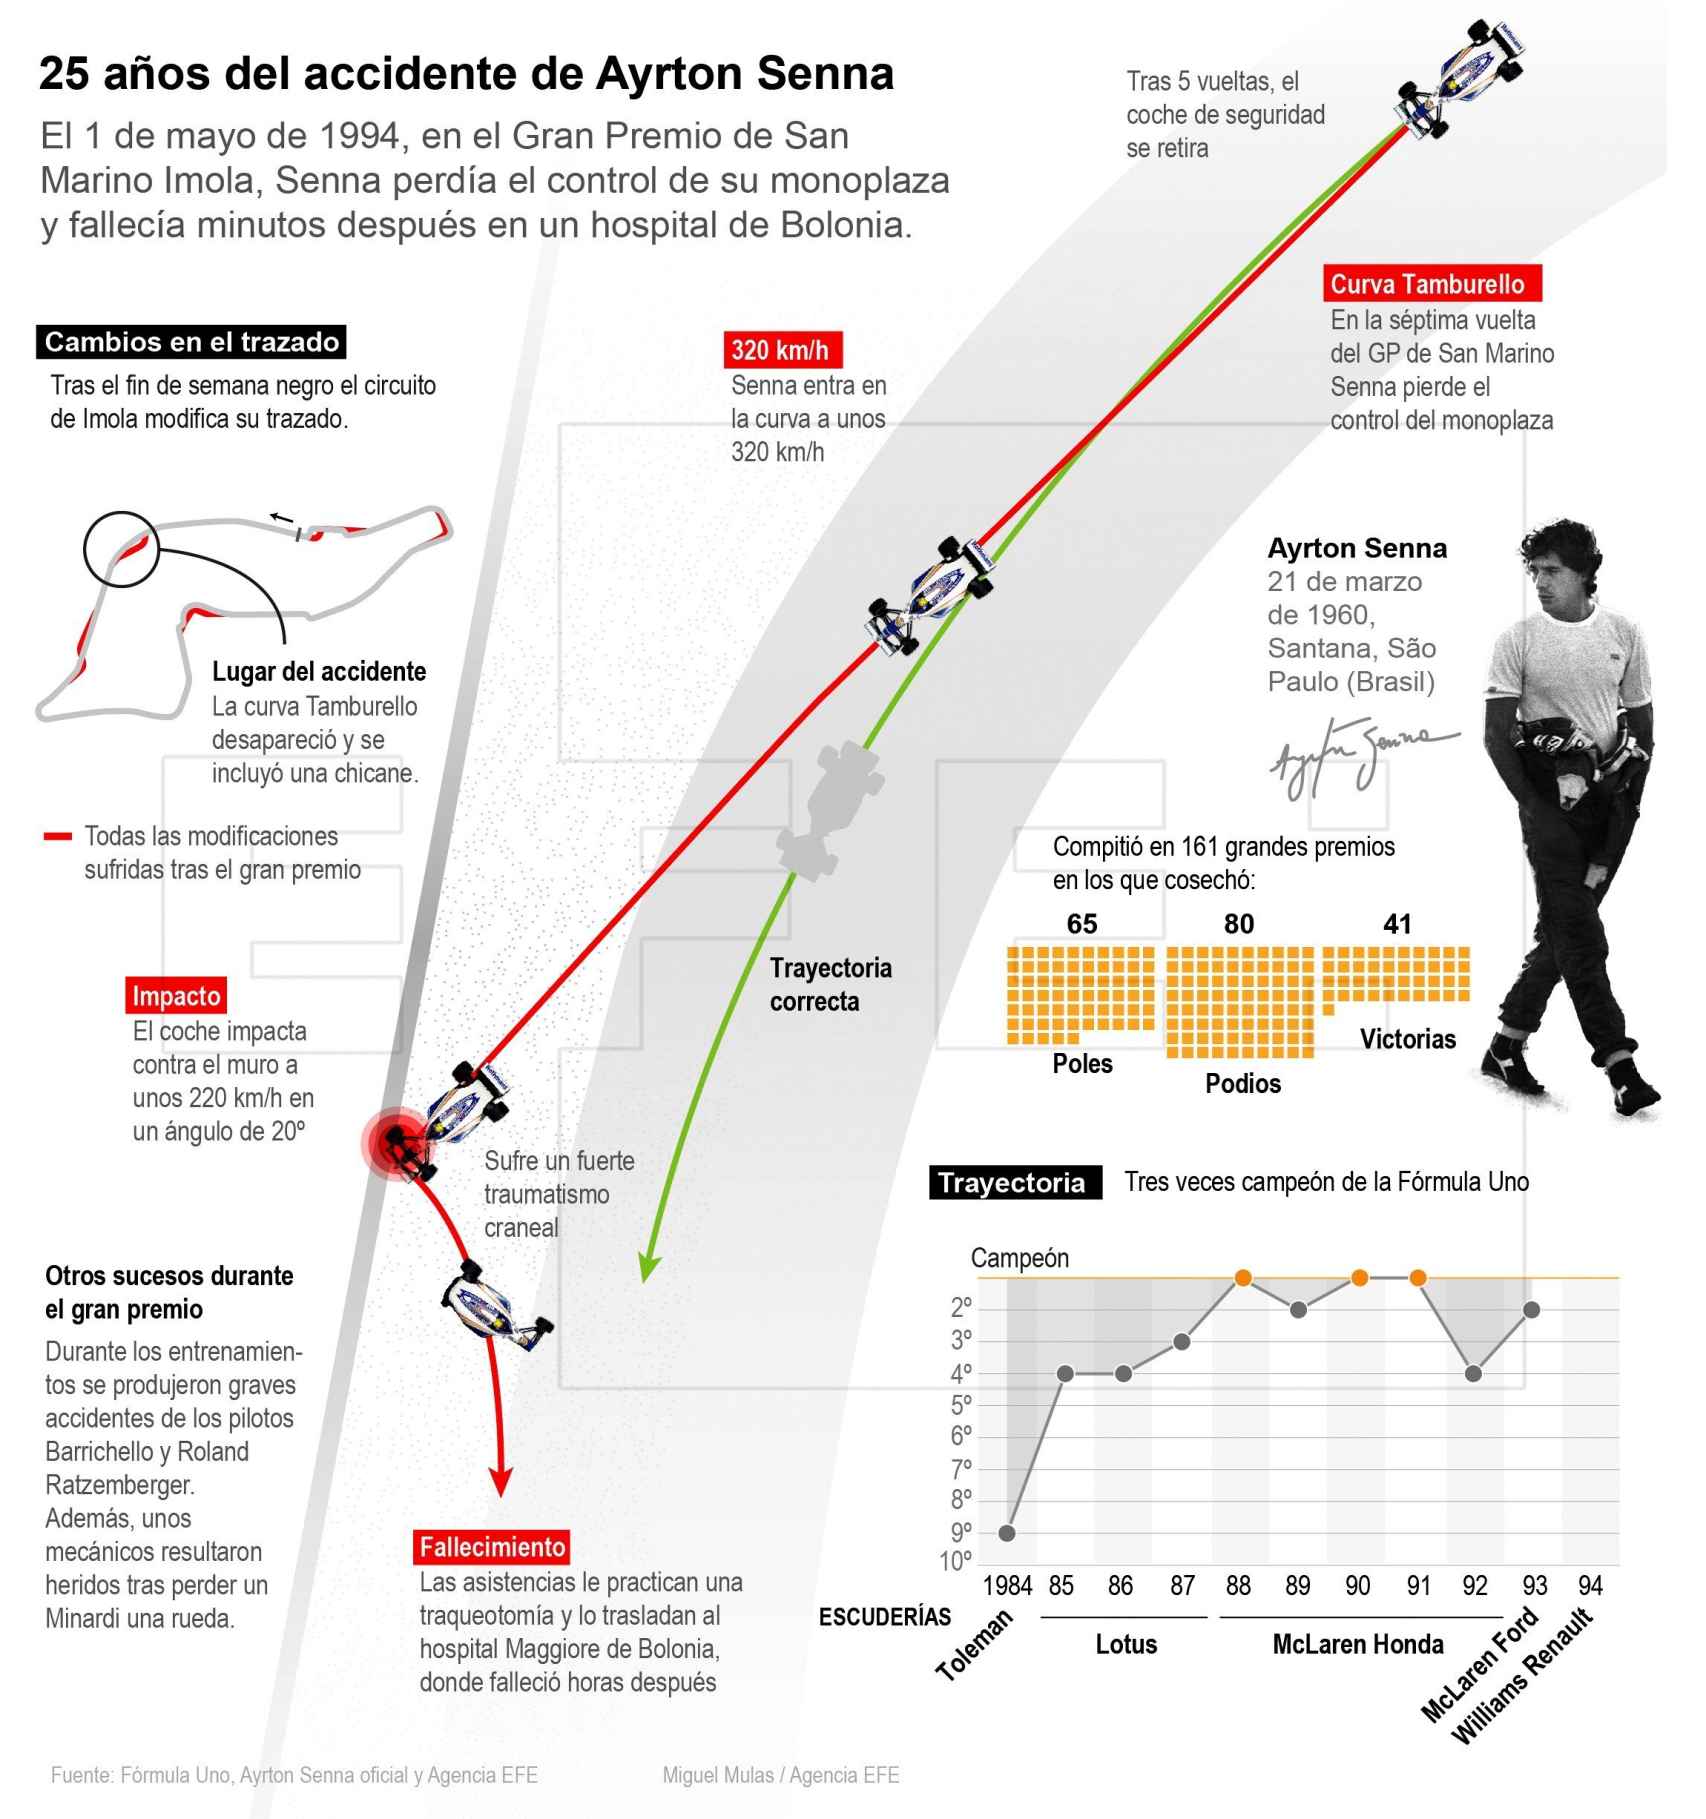 El accidente que acabó con la vida de Ayrton Senna